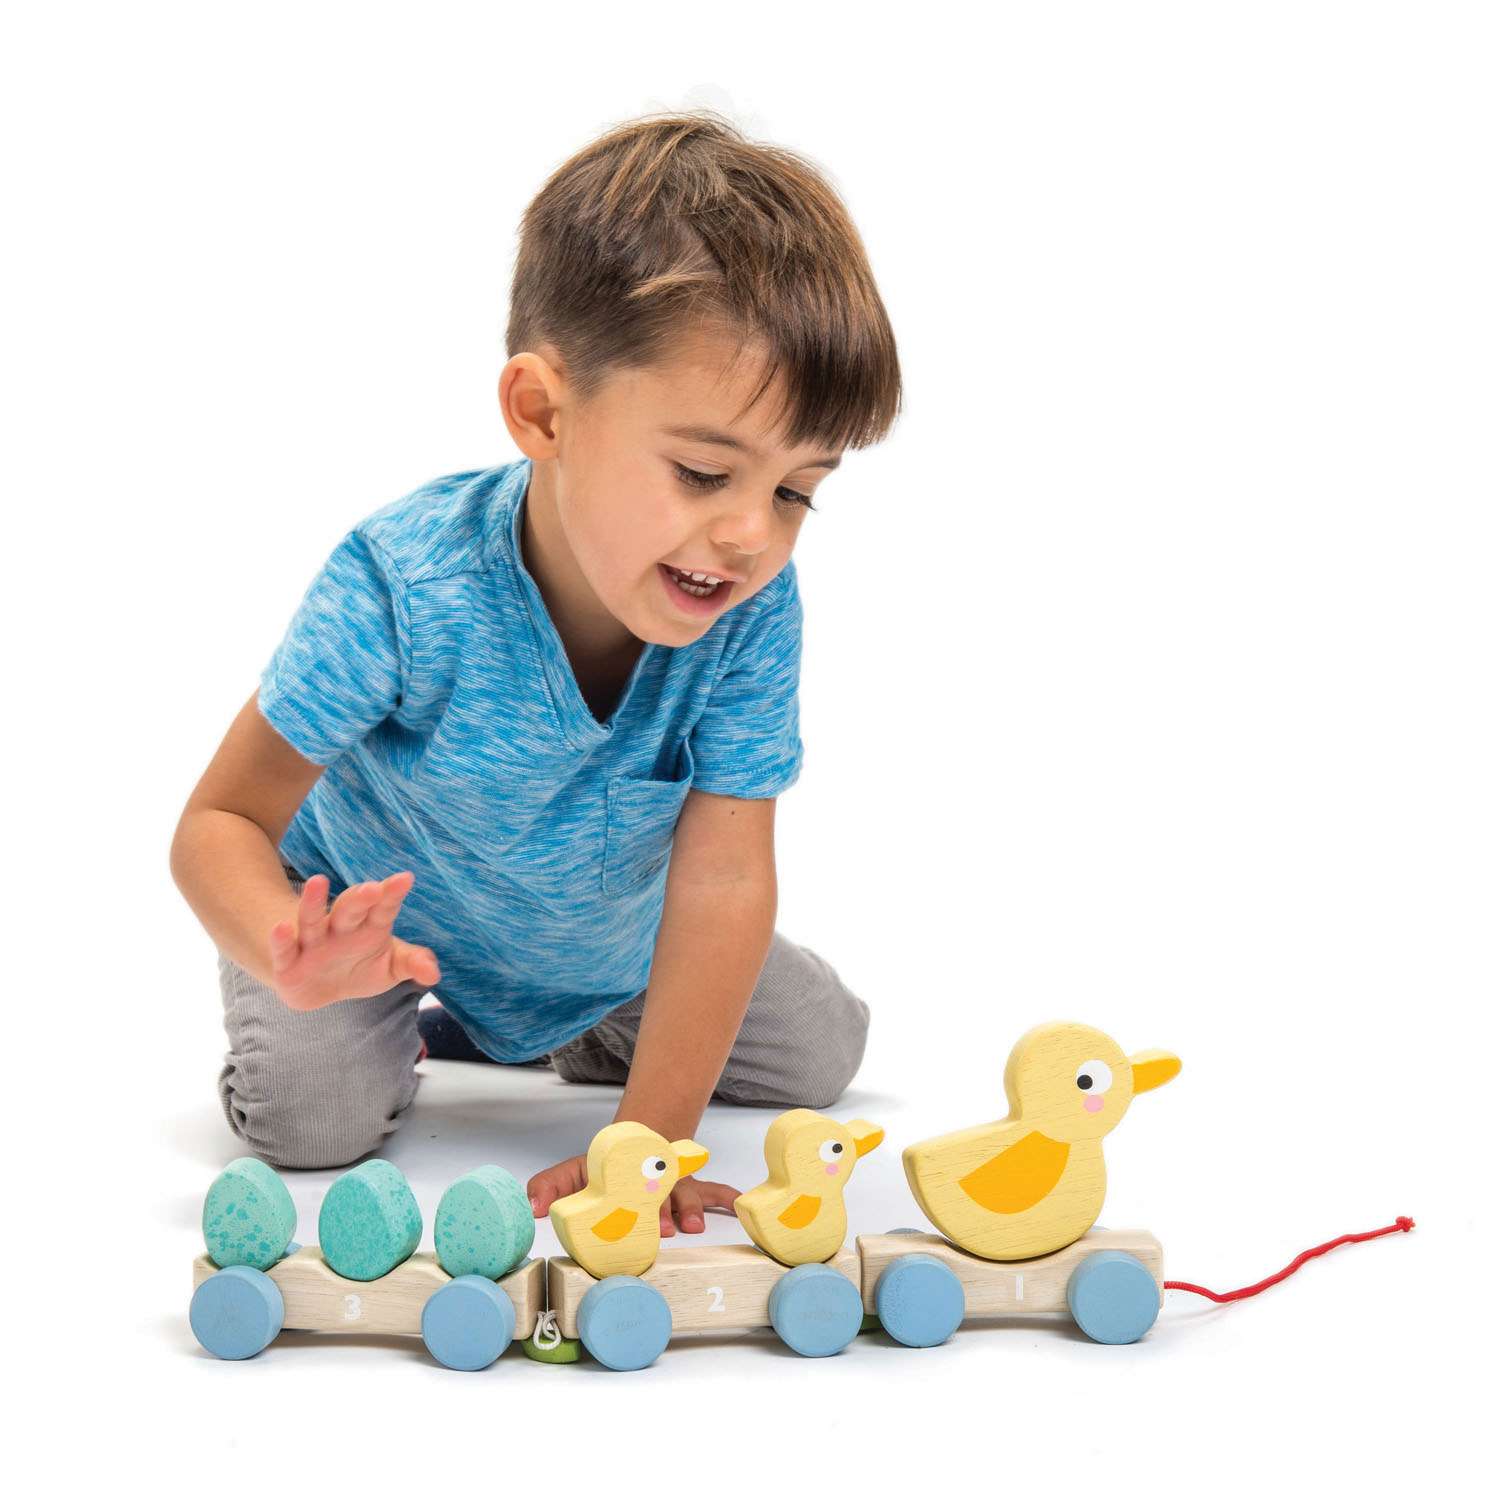 Tender Leaf Toys ของเล่นไม้ ของเล่นเสริมพัฒนาการ เดินเล่นกับเป็ดน้อย Pull Along Ducks